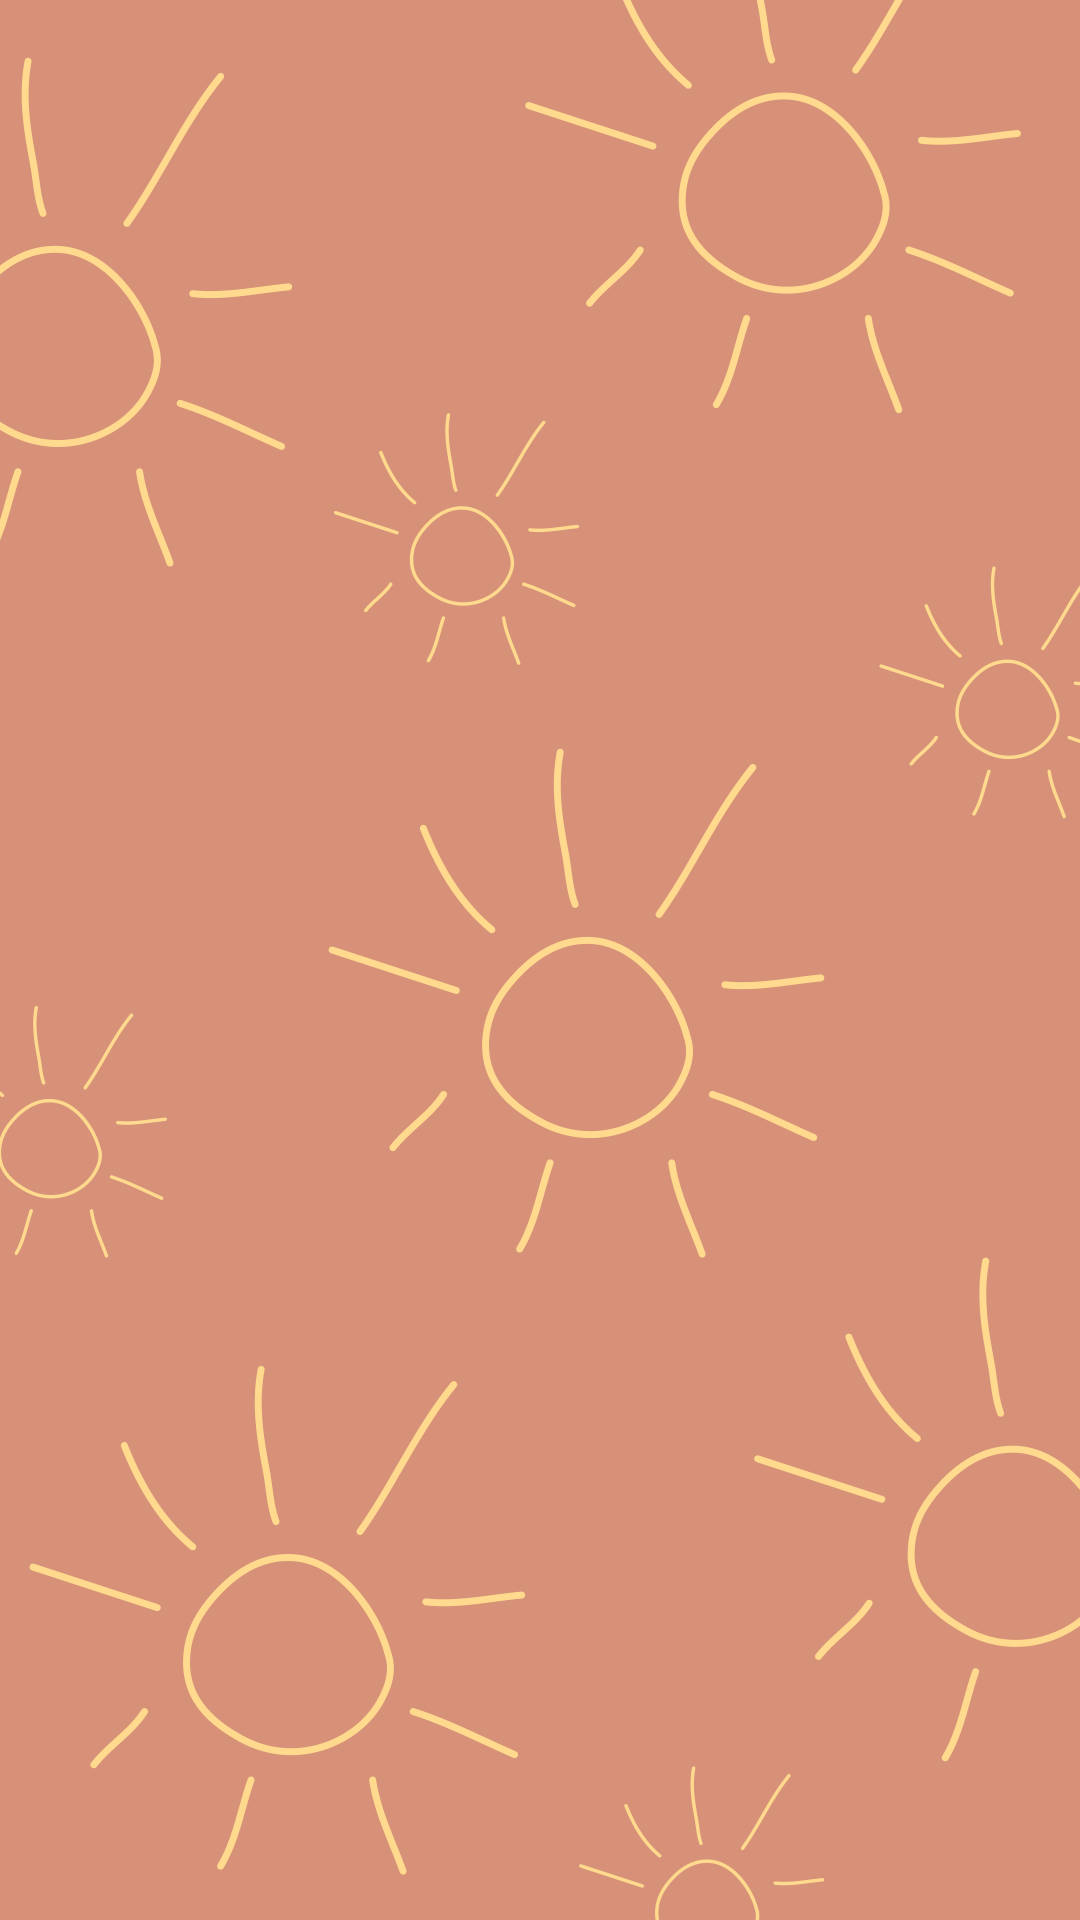 Simple Boho Sun Drawings Wallpaper